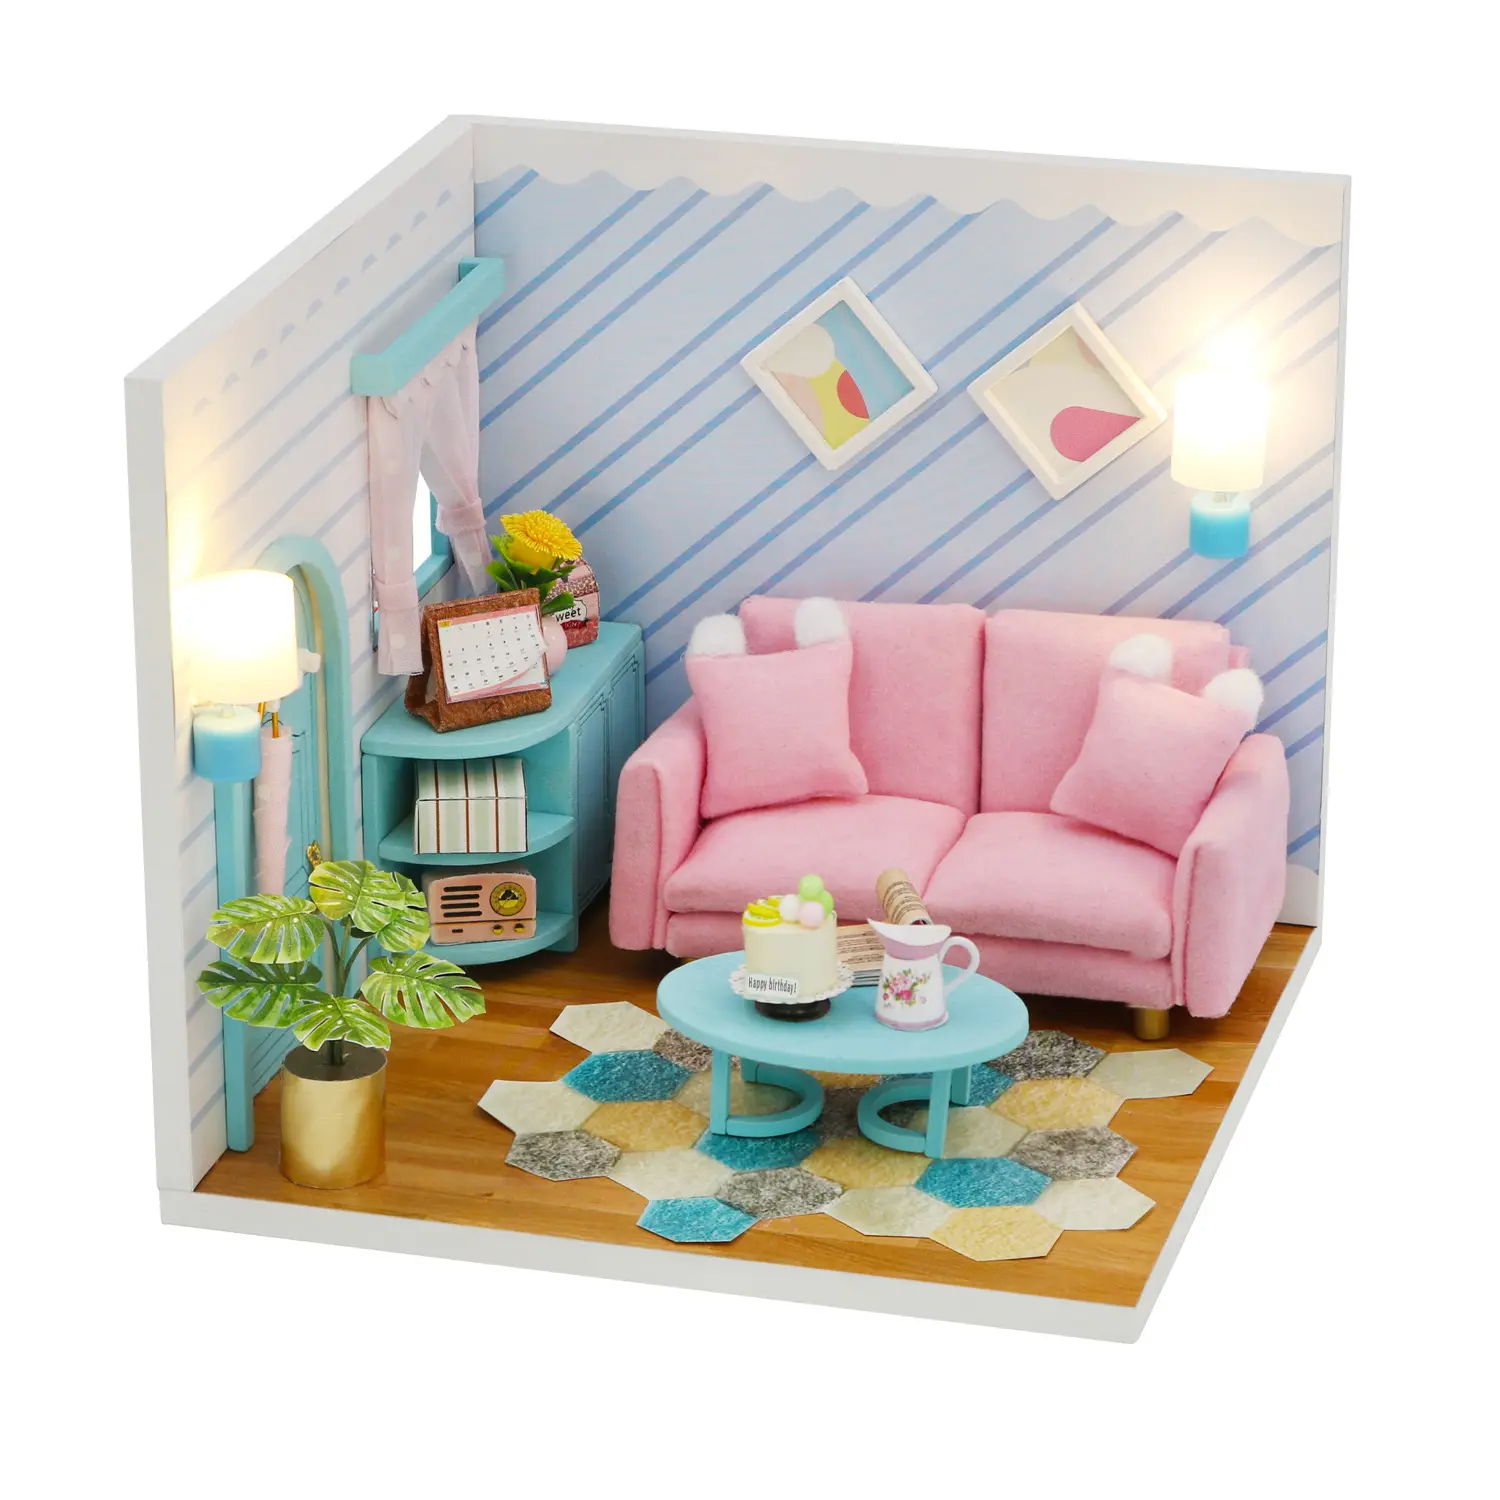 Nouveau design de meubles miniatures en bois lumineux maison de poupée maison de poupée en bois bricolage pour distributeur